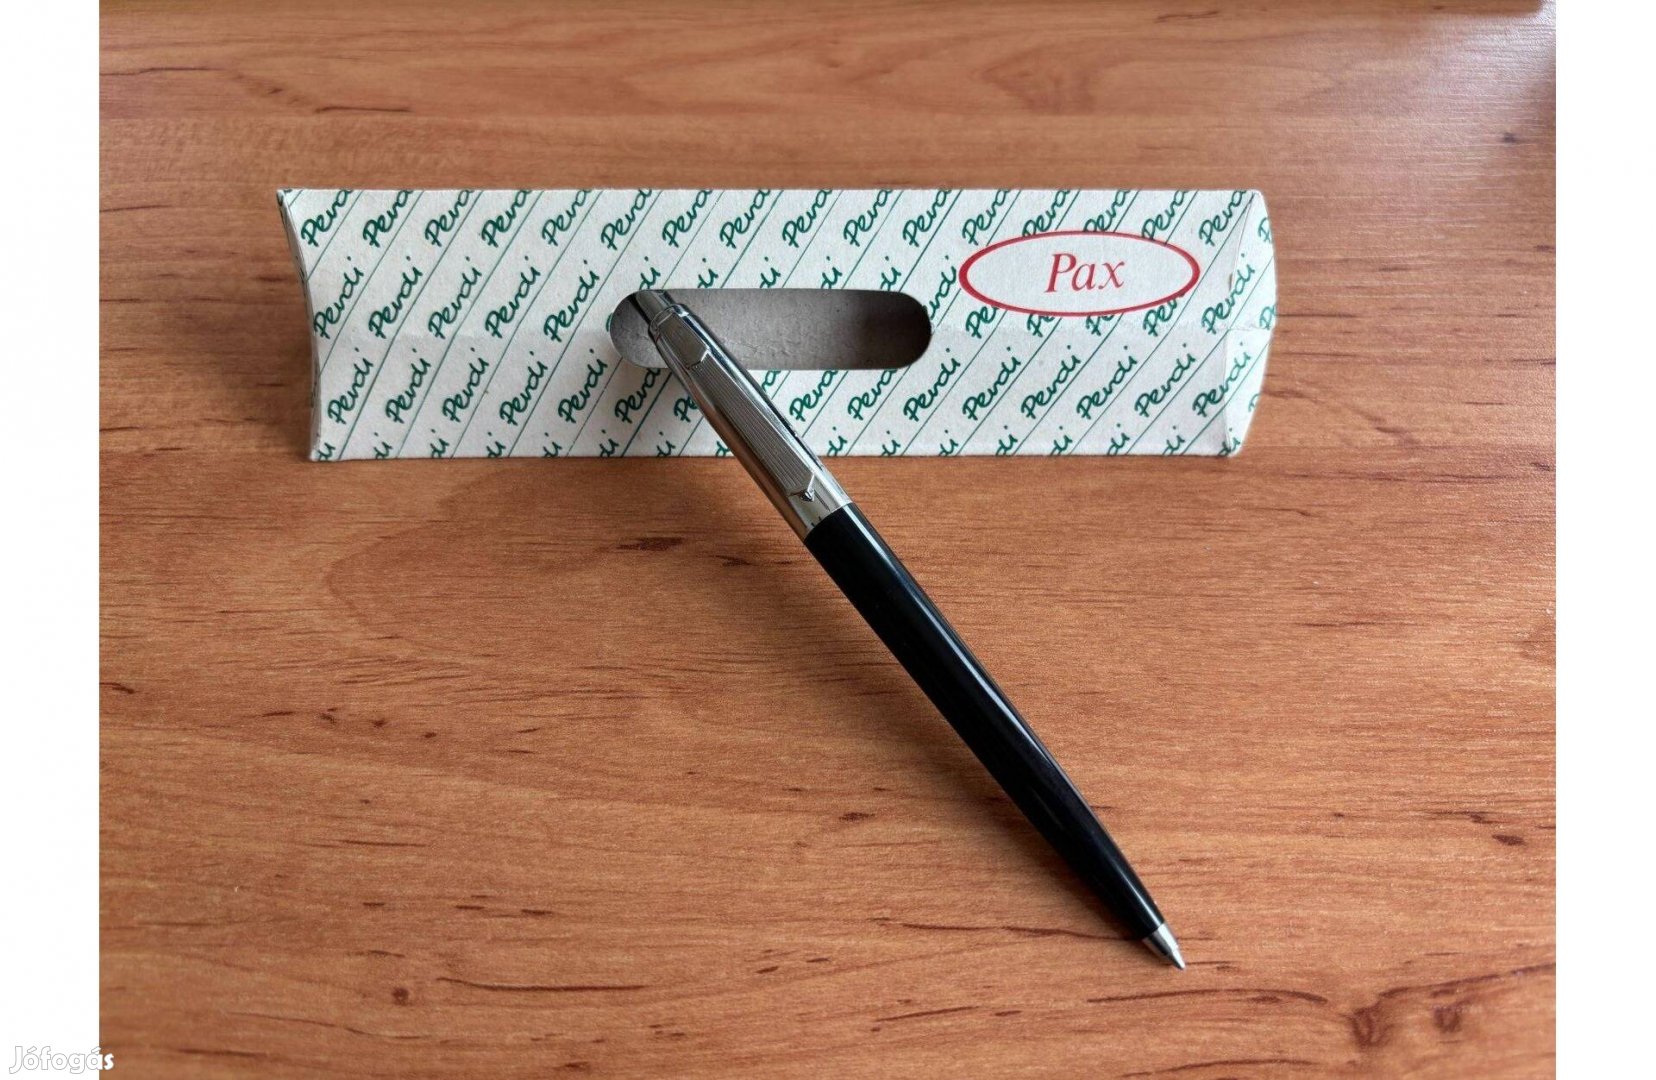 Fekete PAX toll eredeti csomagolásban